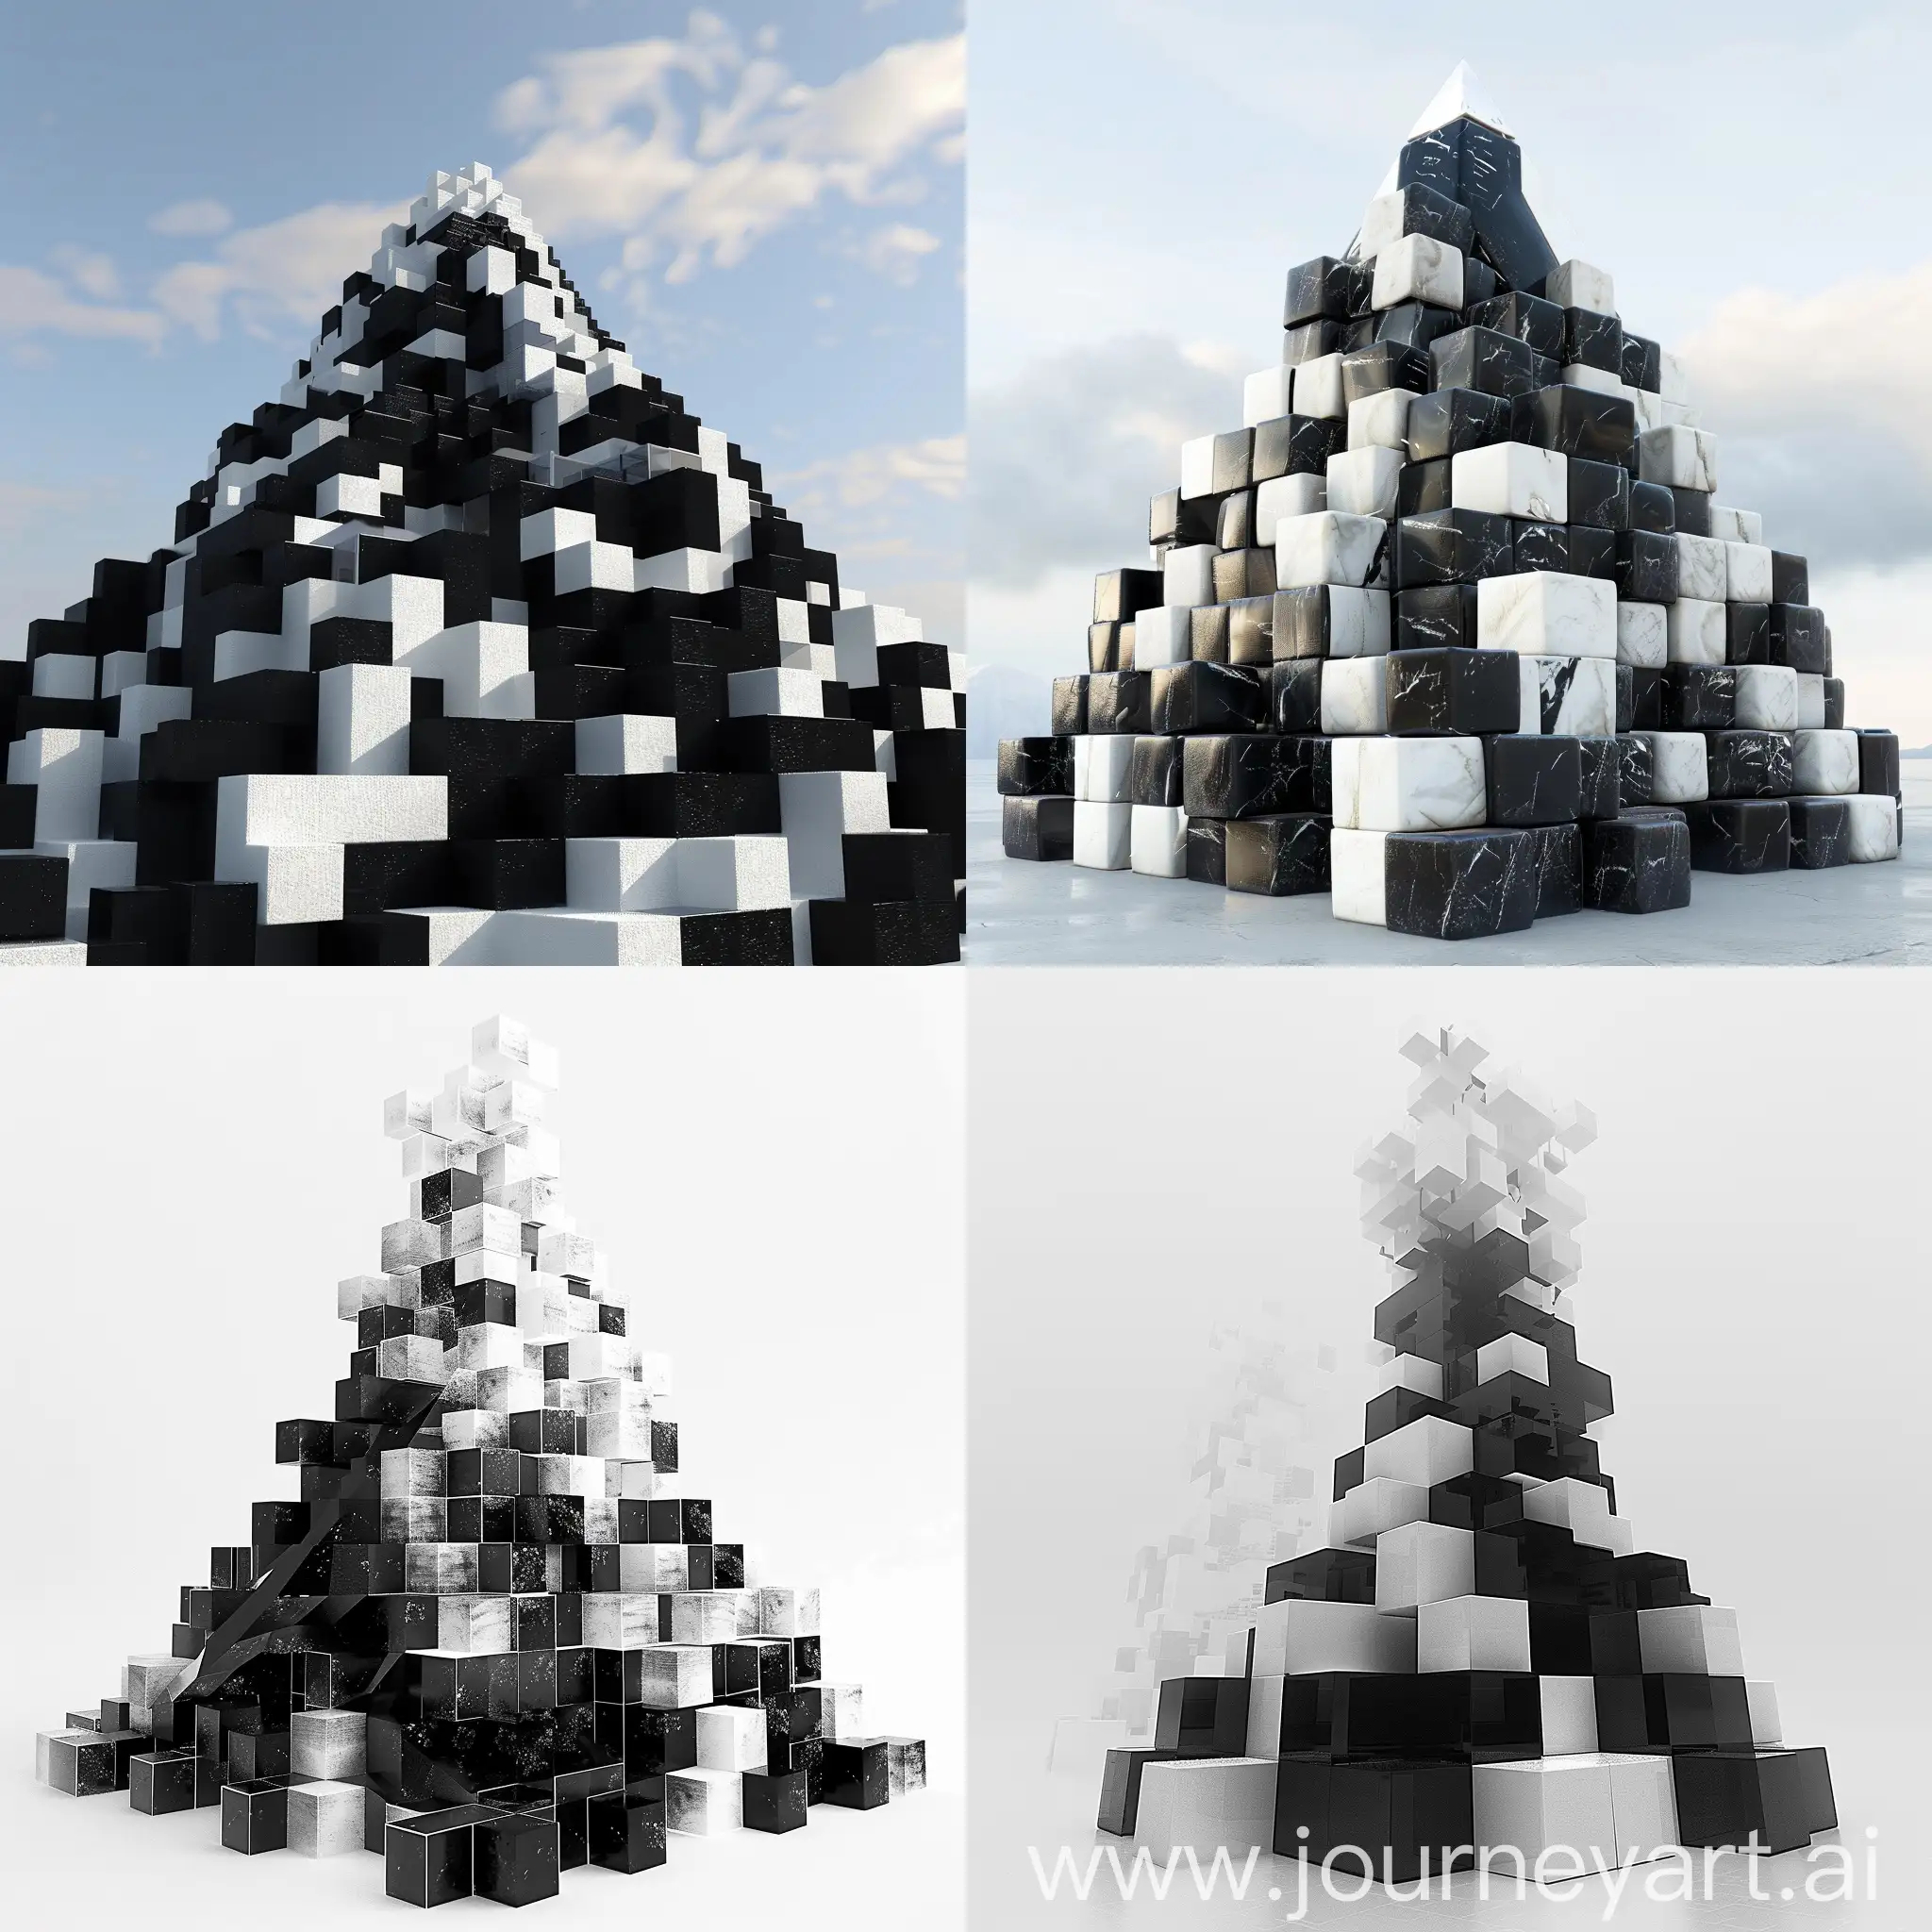 Generame una montaña hecha de cubos en blanco y negro, apiladas
